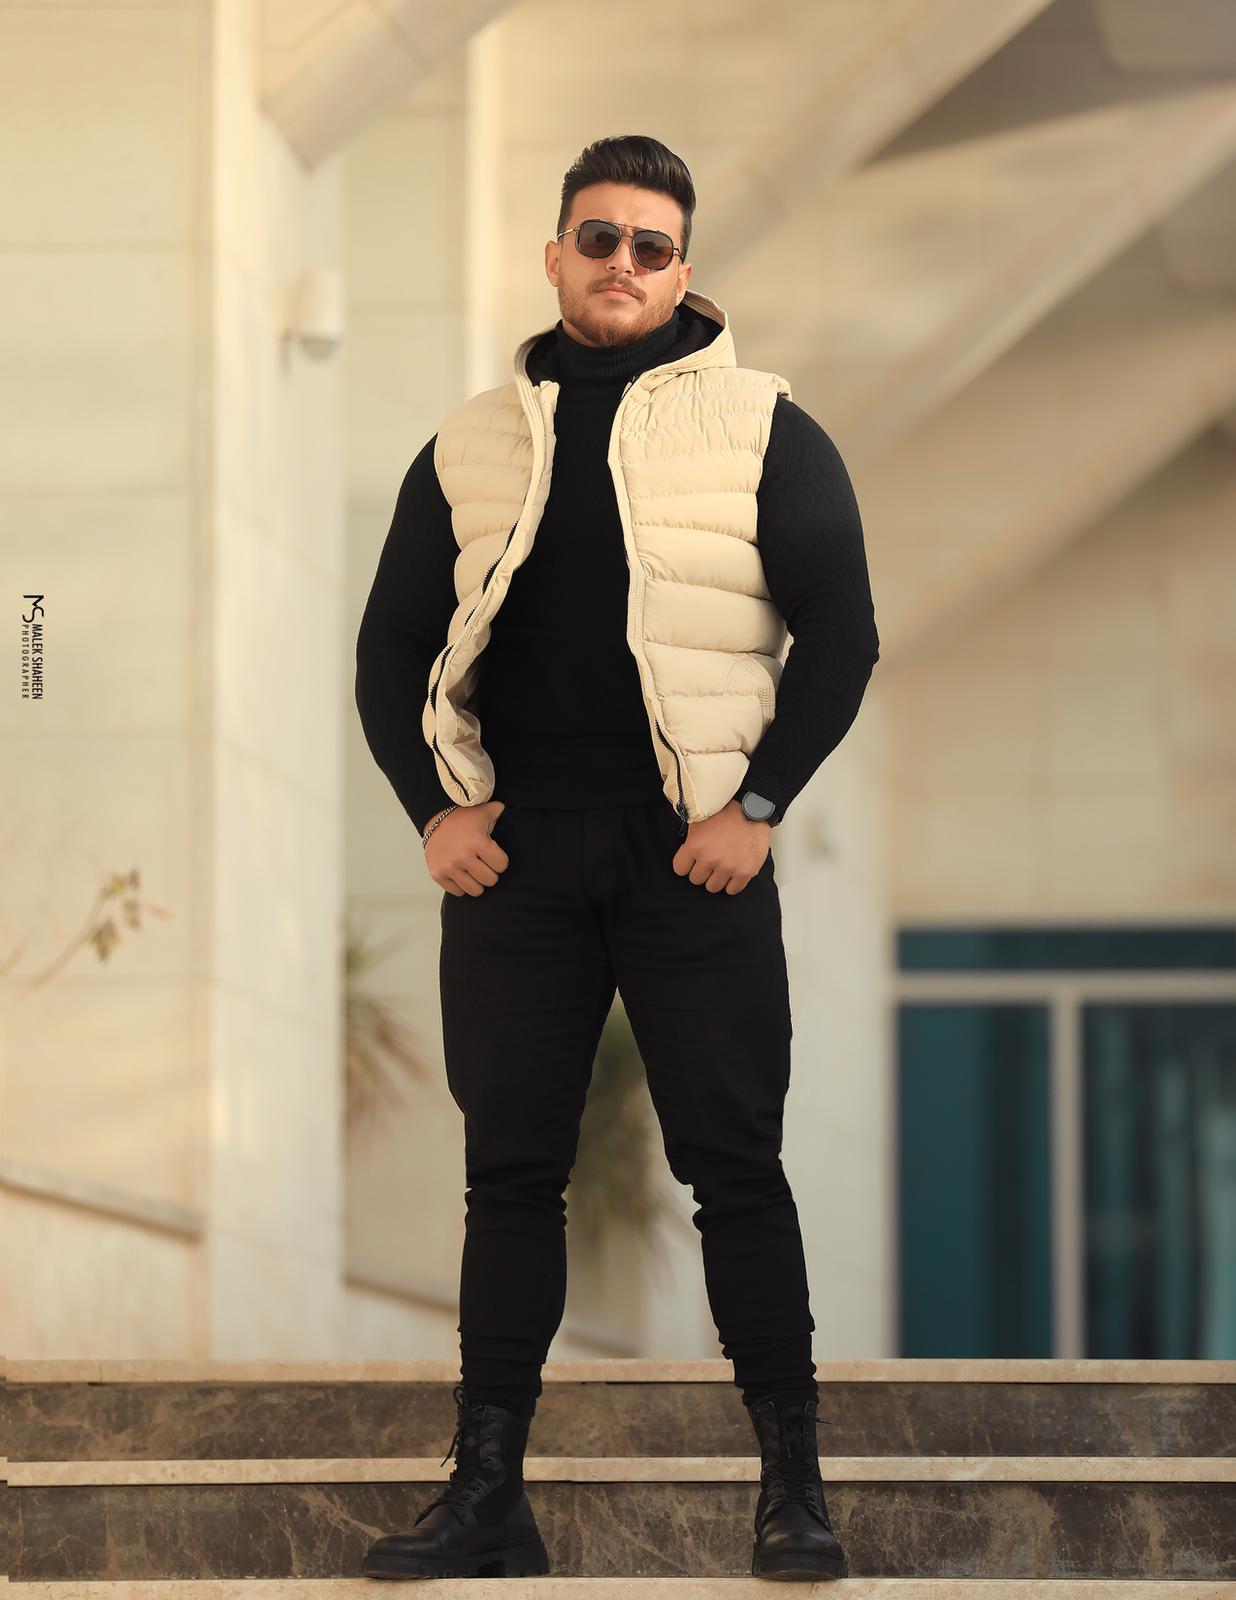 تامر عماد أشهر لاعبي كمال الأجسام في فلسطين